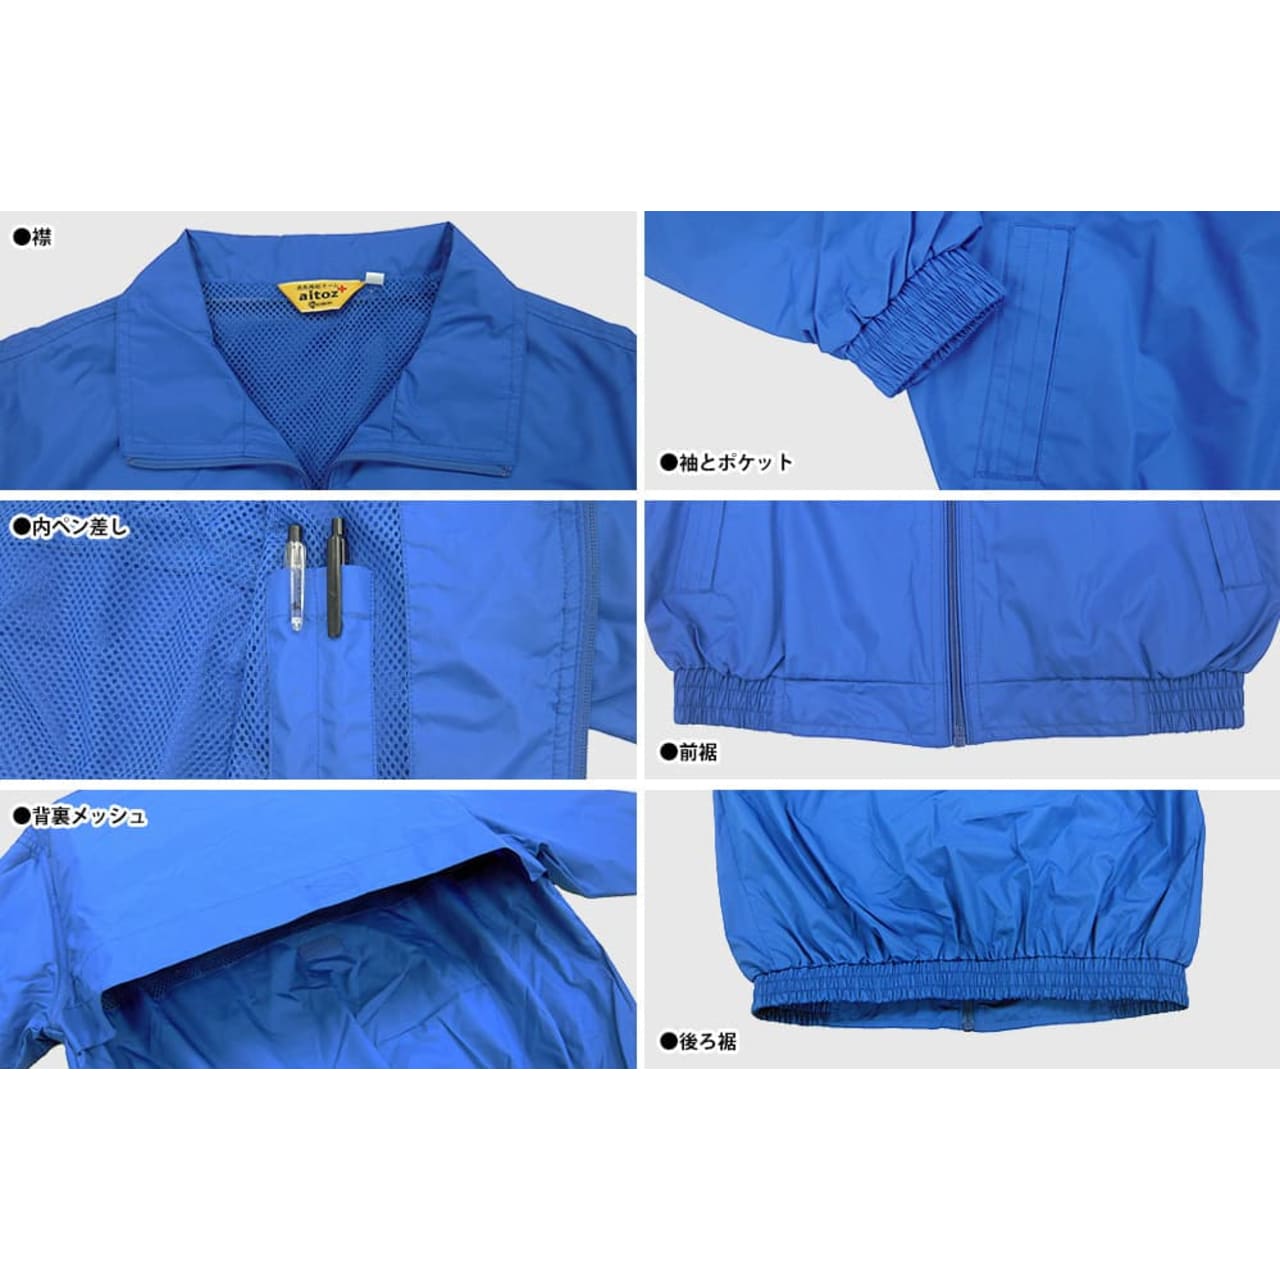 ナイキ    130サイズ 紺色   グレー   襟つき半袖シャツ